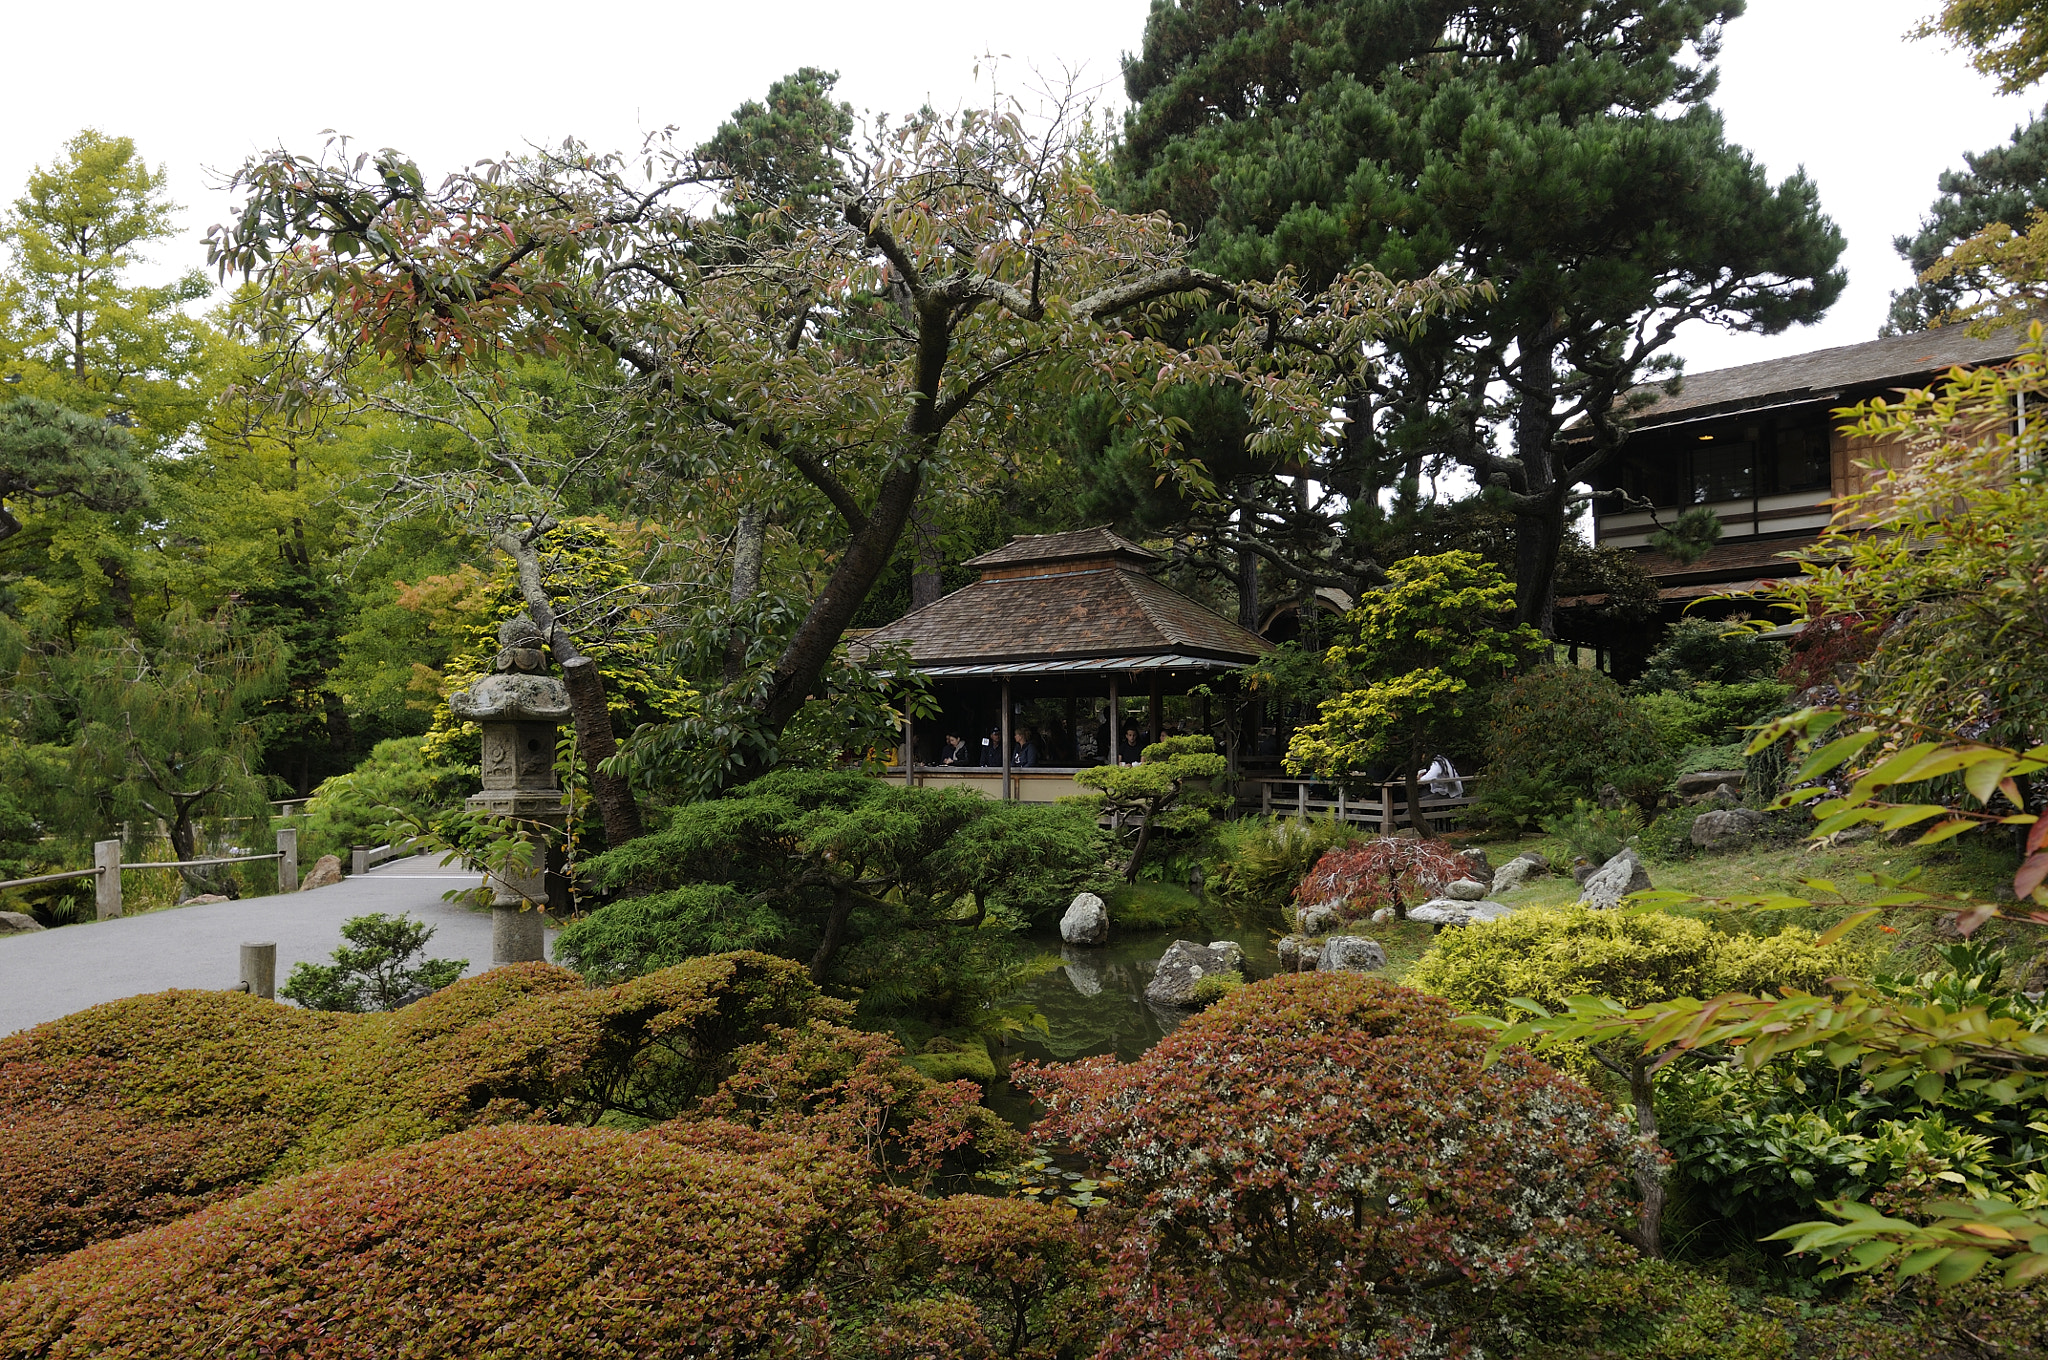 Nikon D300 sample photo. San francisco - japanese tea garden photography